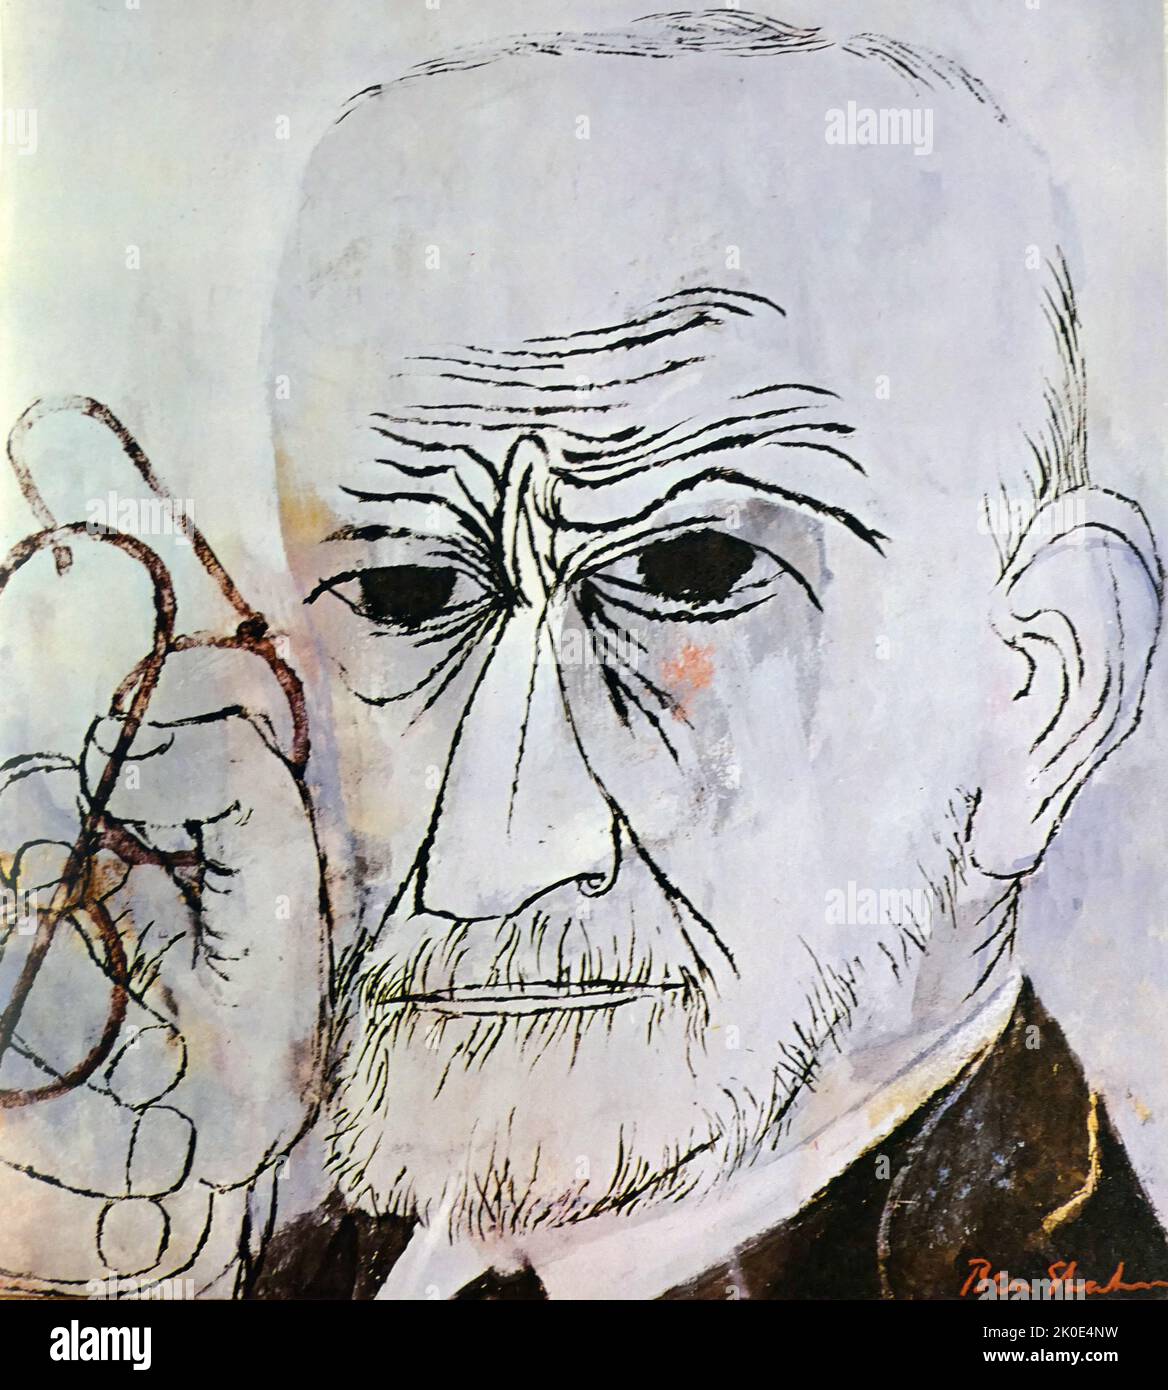 Sigmund Freud (1856 - 23 de septiembre de 1939) Neurólogo austriaco y fundador del psicoanálisis, un método clínico para el tratamiento de la psicopatología mediante el diálogo entre un paciente y un psicoanalista. Retrato de Ben Shahn 1956. Foto de stock